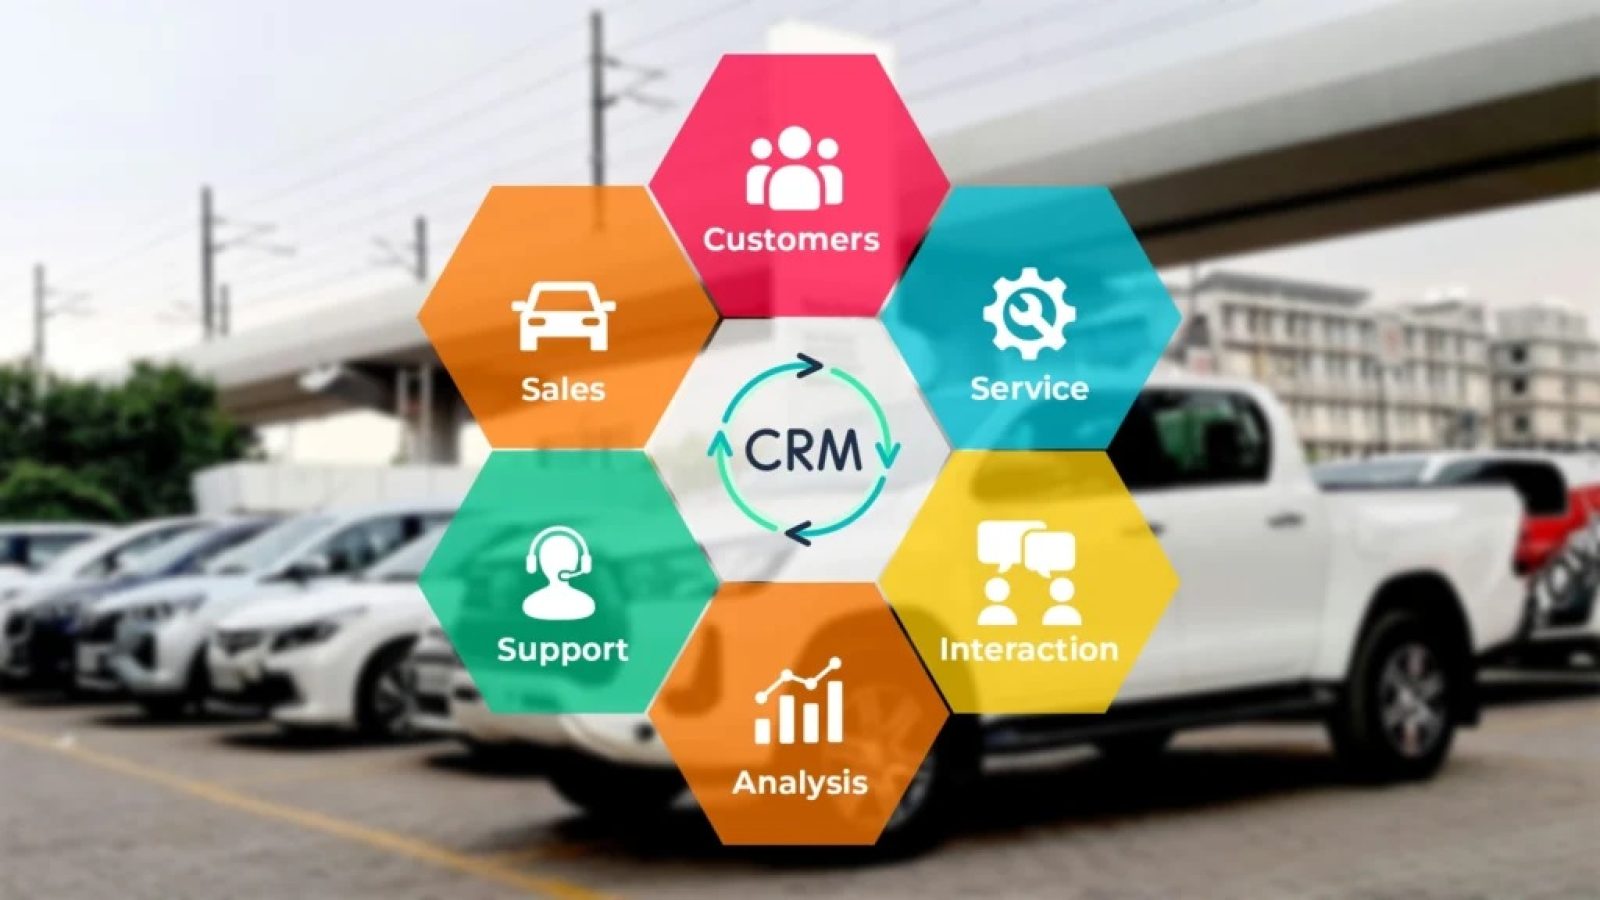 Automotive CRM Software